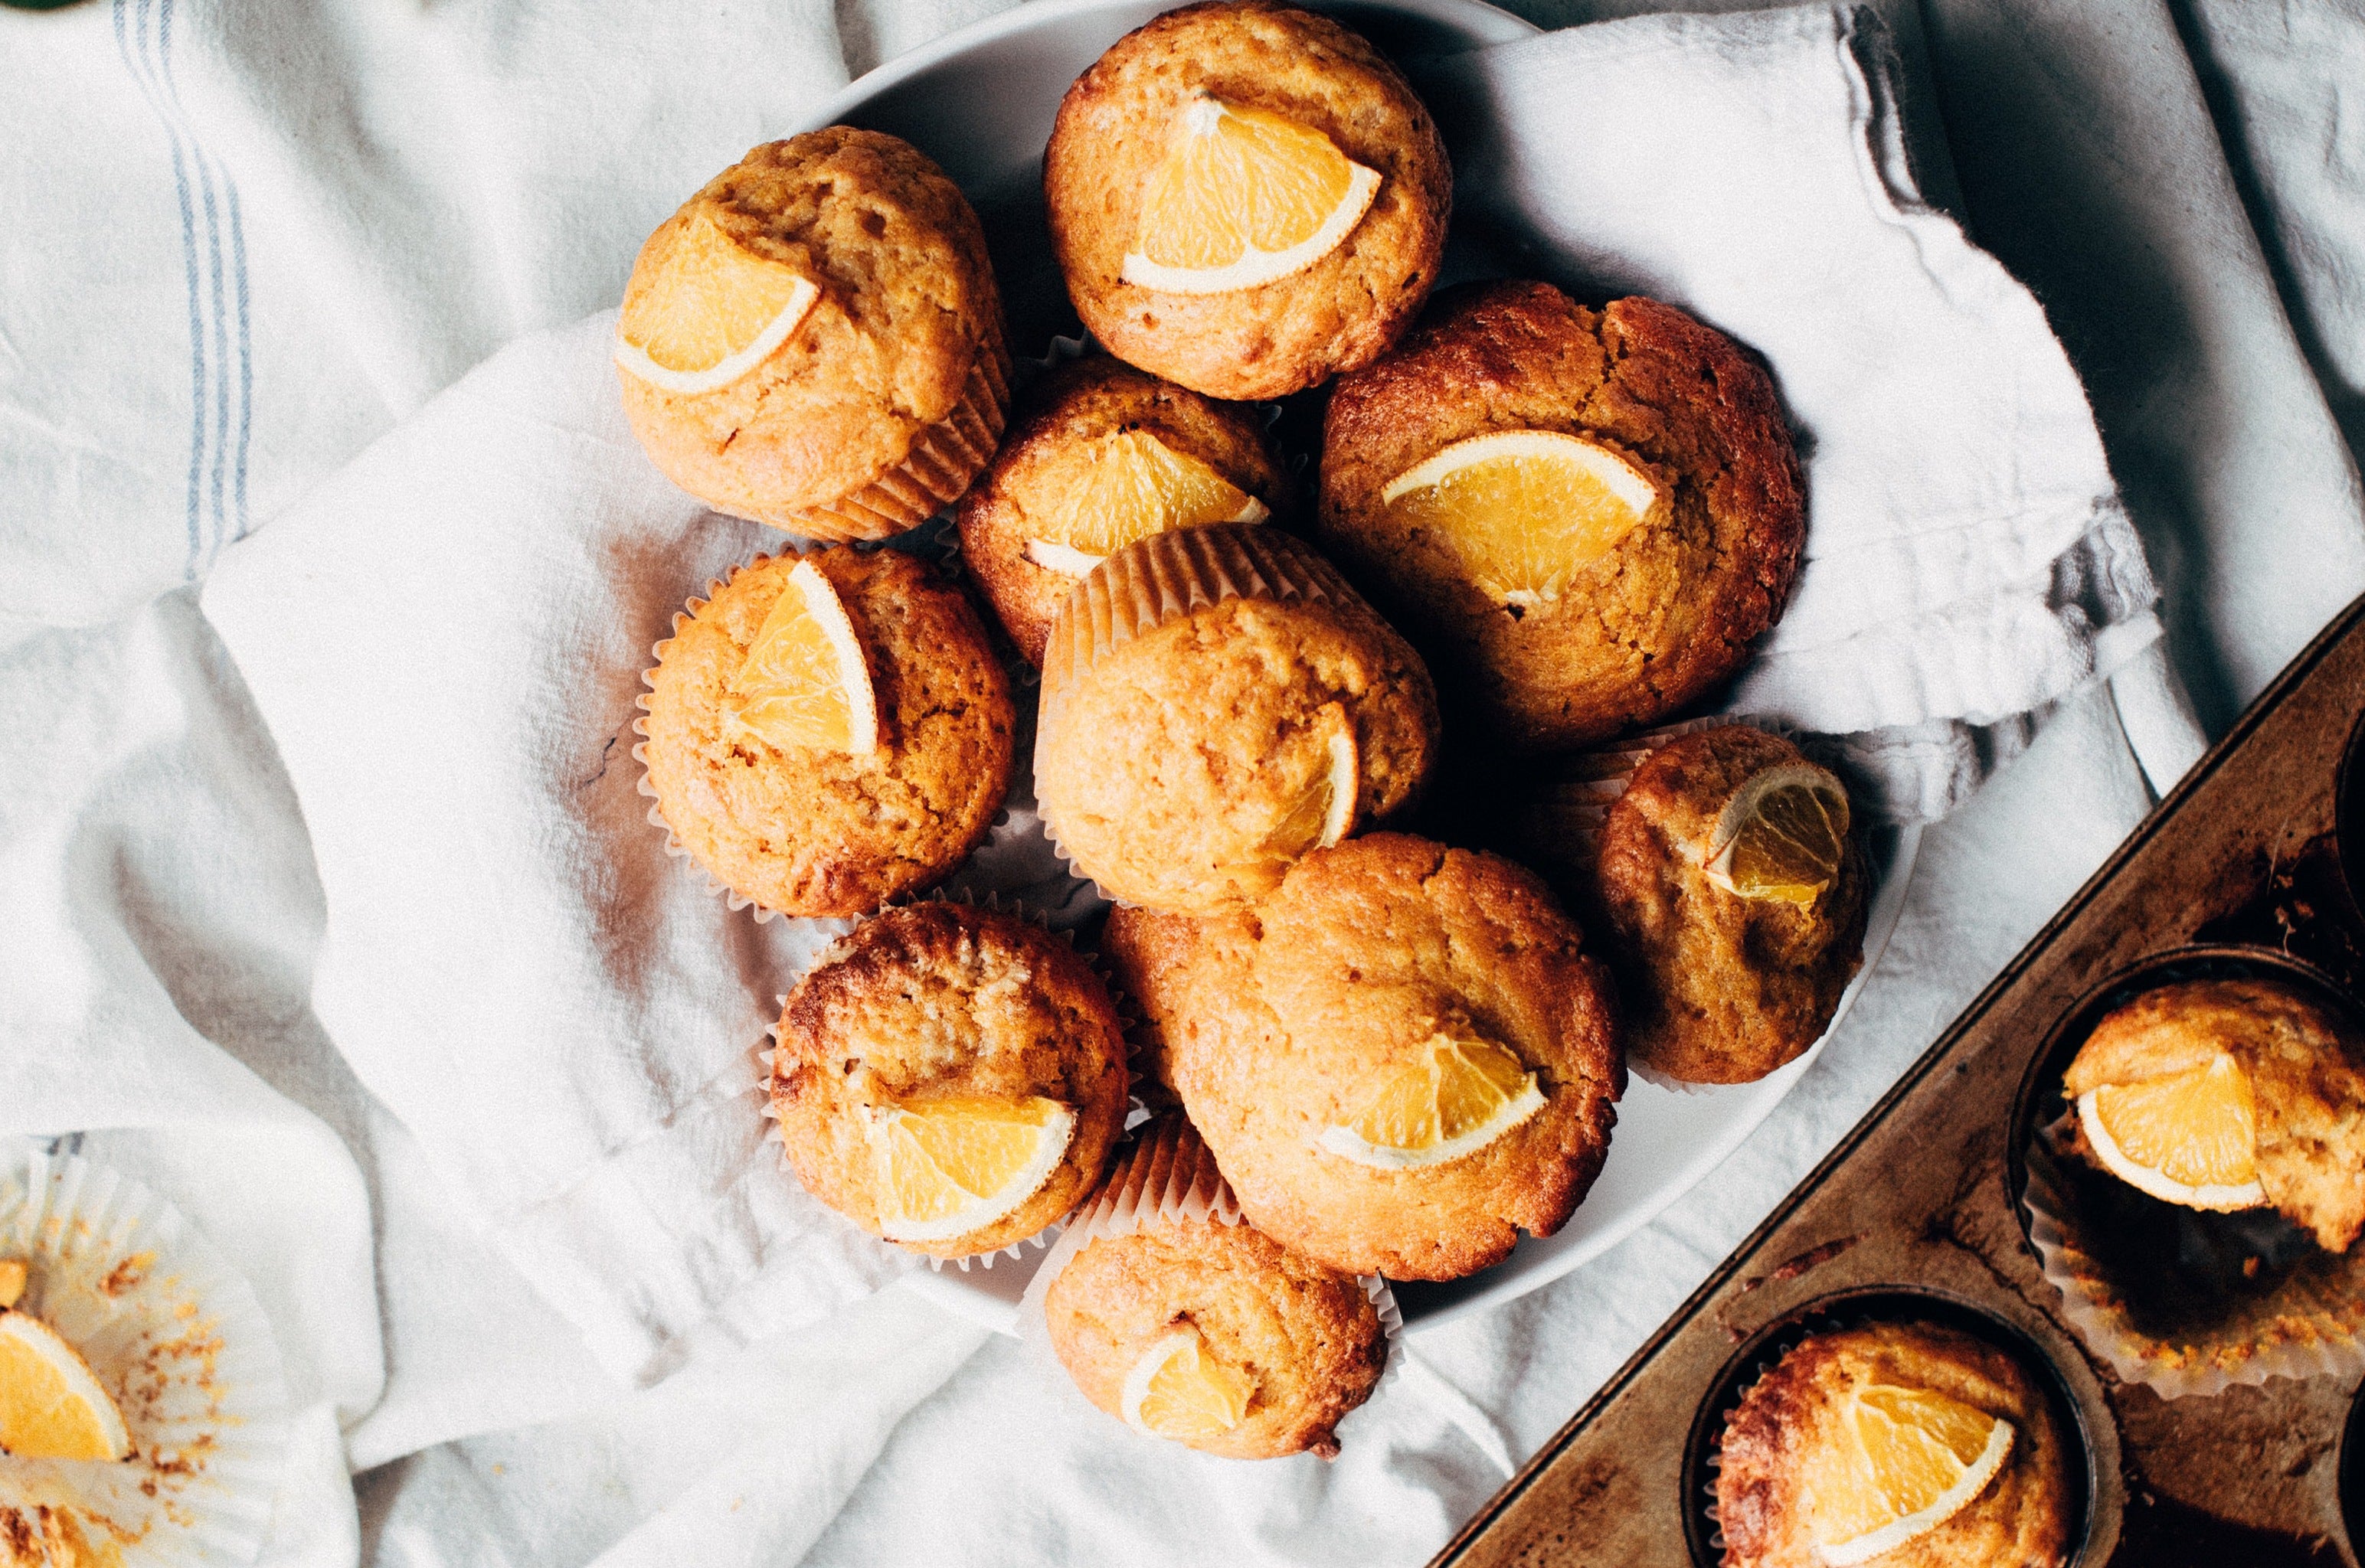 Mandarin and Date Muffins